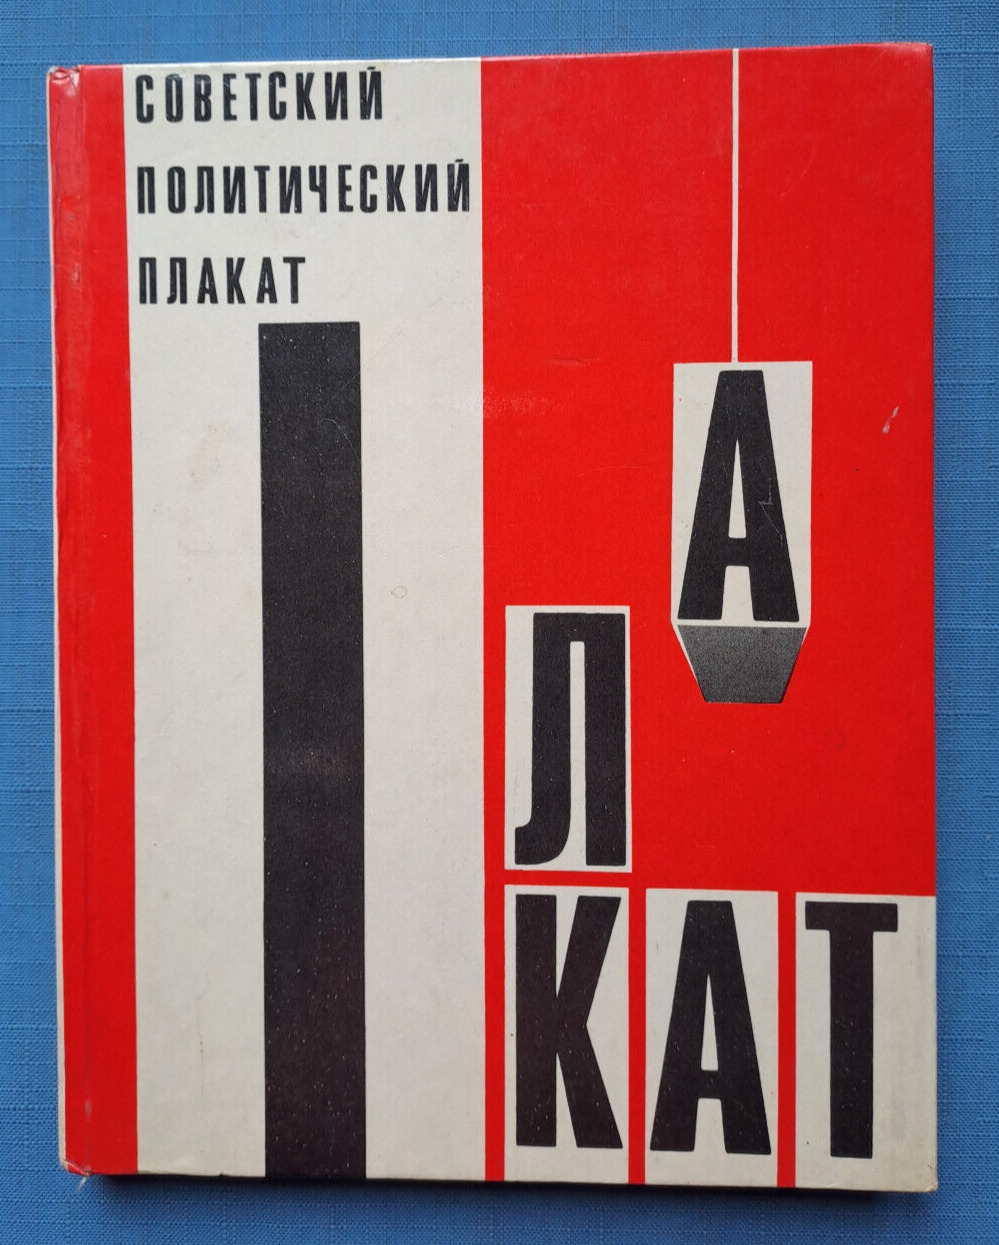 1975 Soviet Political Poster Plakat Art Propaganda Ivanov Koretsky Russian book